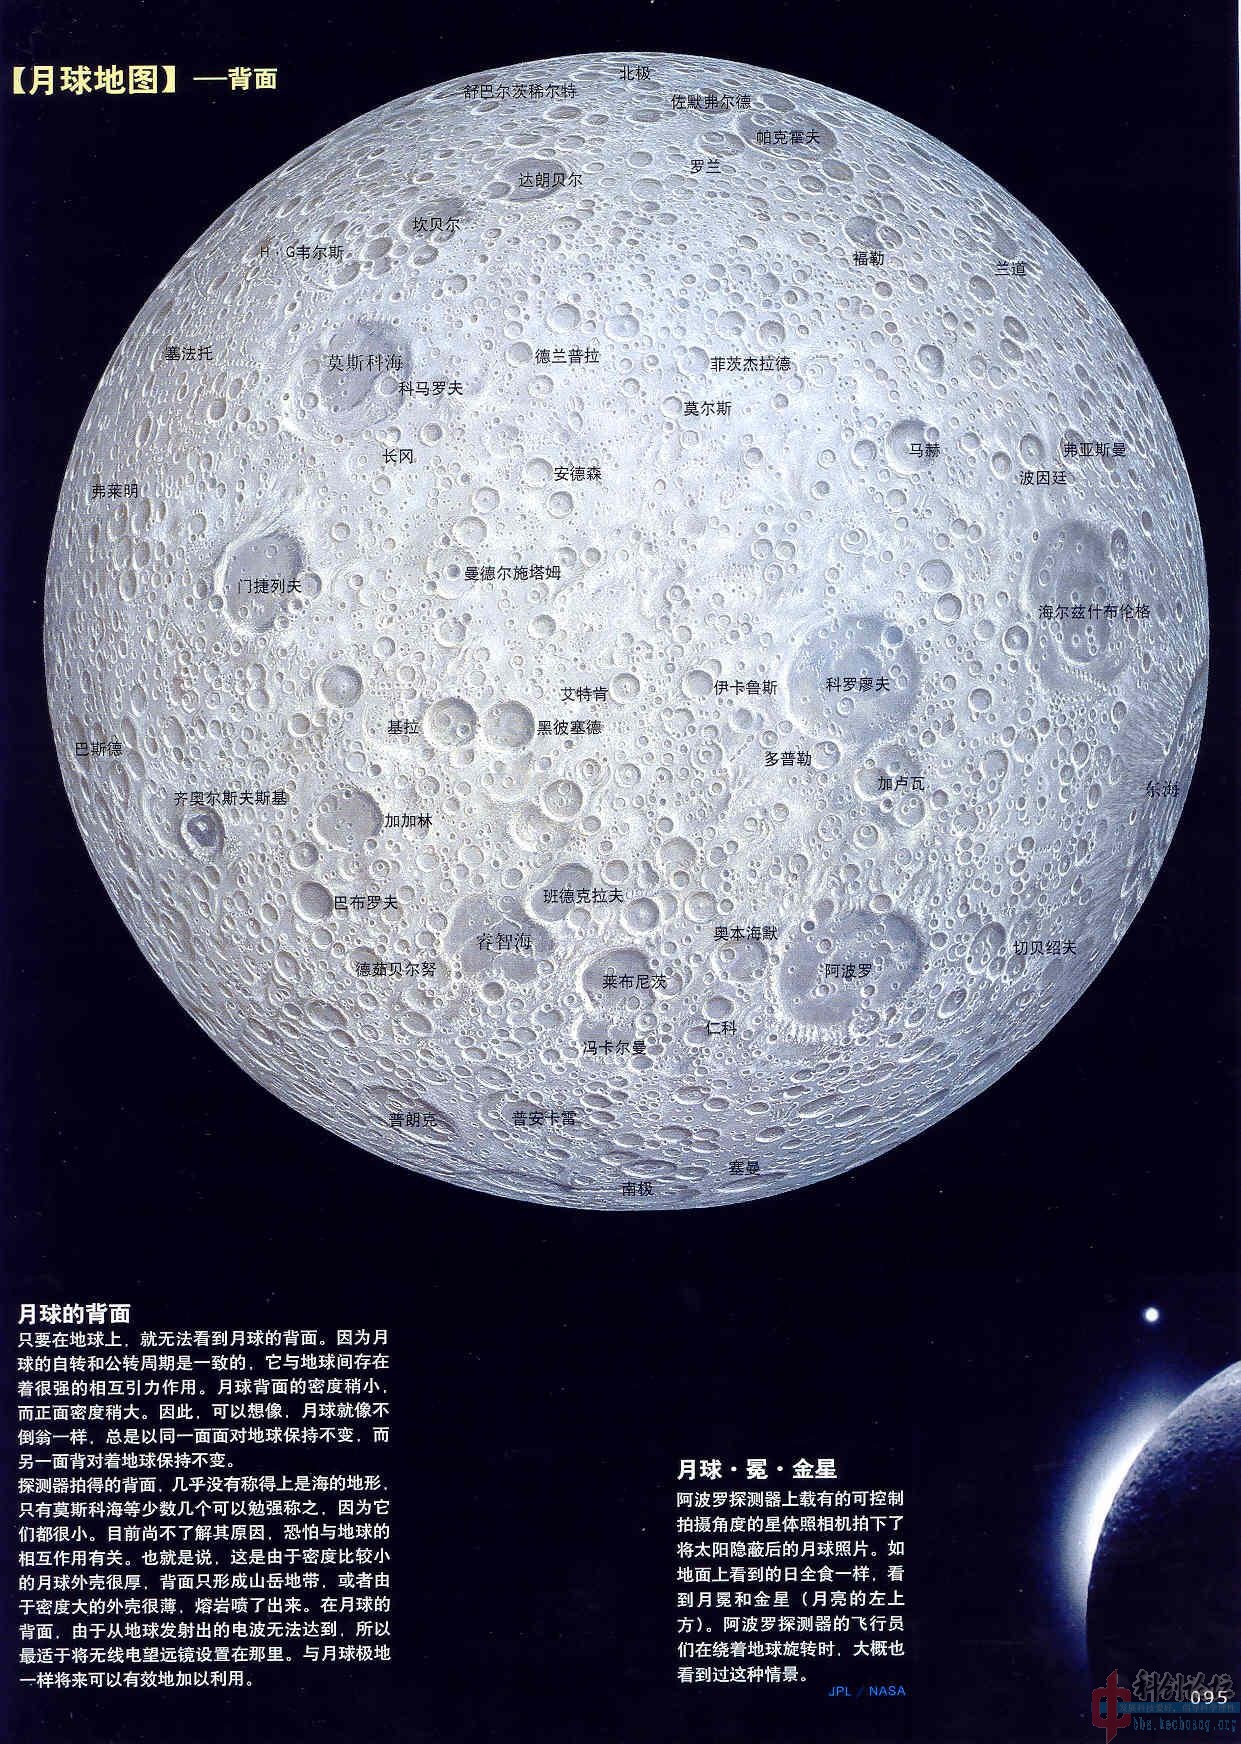 追星族天文爱好者俱乐部天文观测资料月球